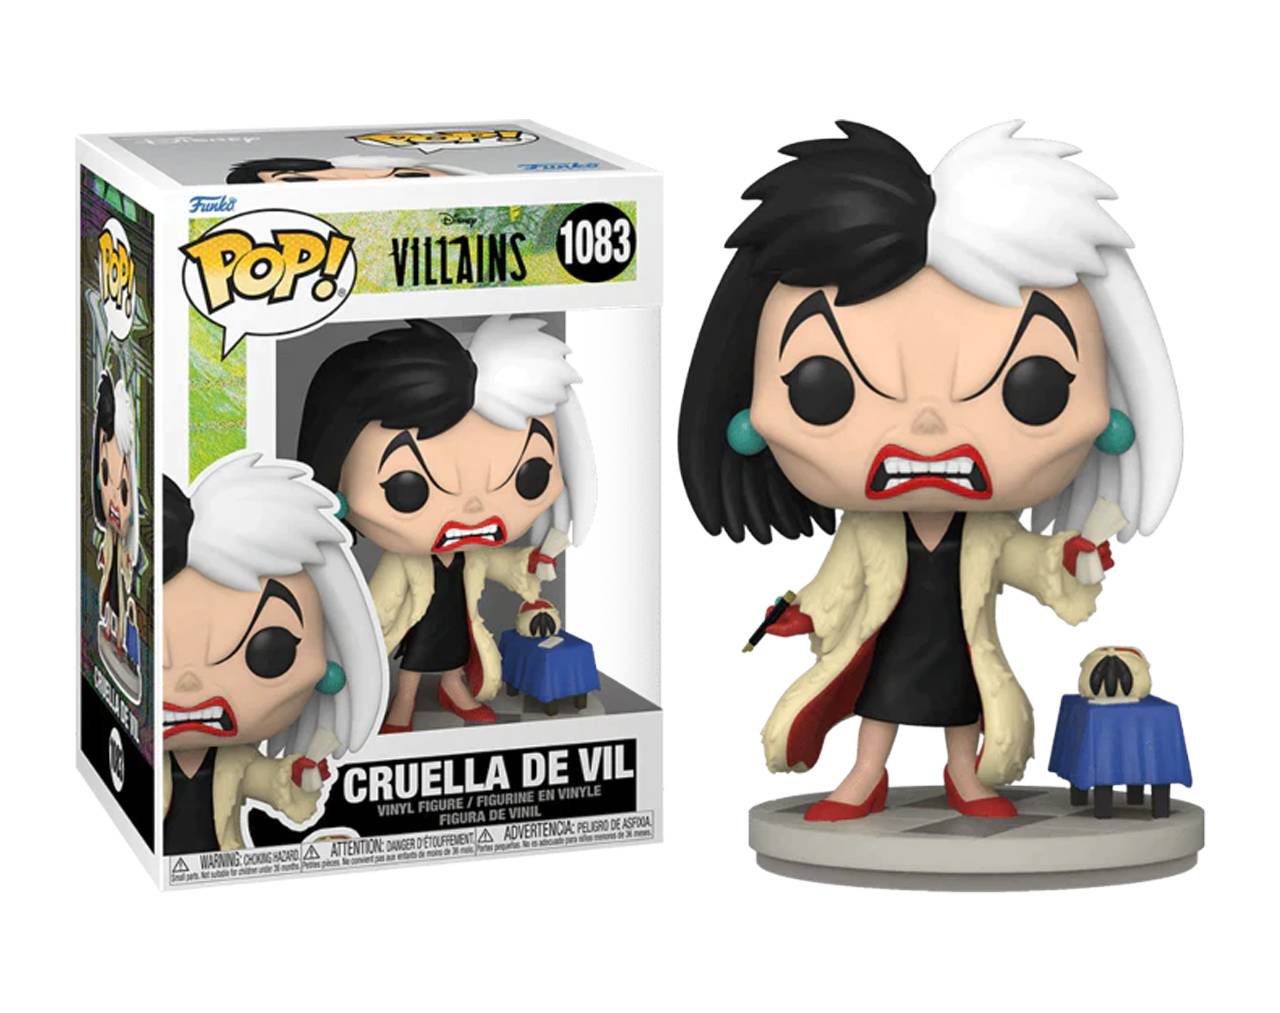 Cruella De Vil - Disney Villains Pop! Vinyl